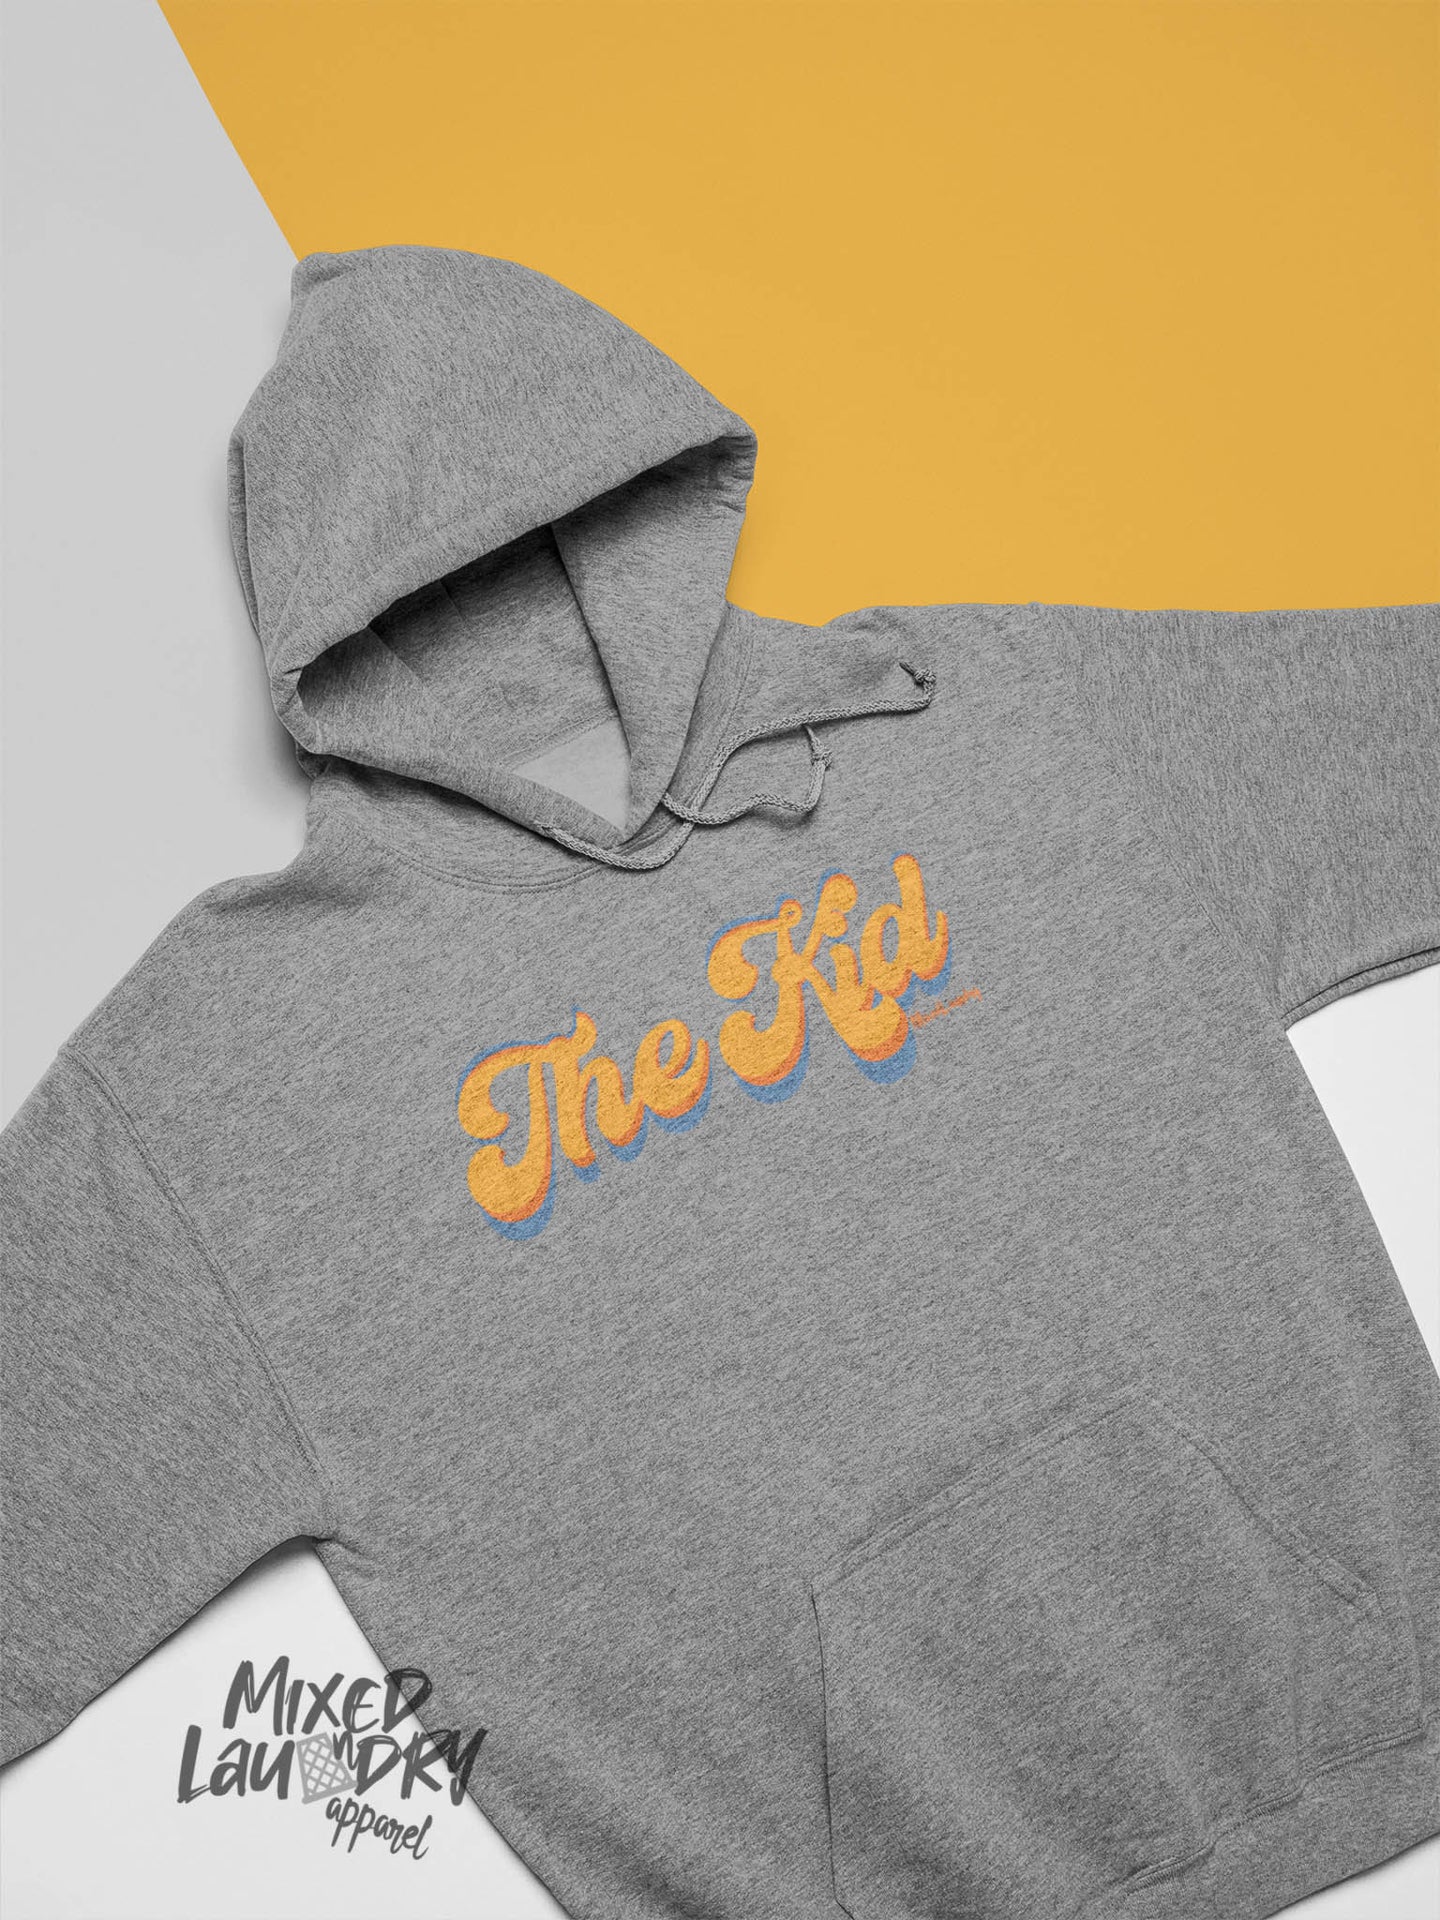 The Kid| Small Adult Unisex Hooded Sweatshirt